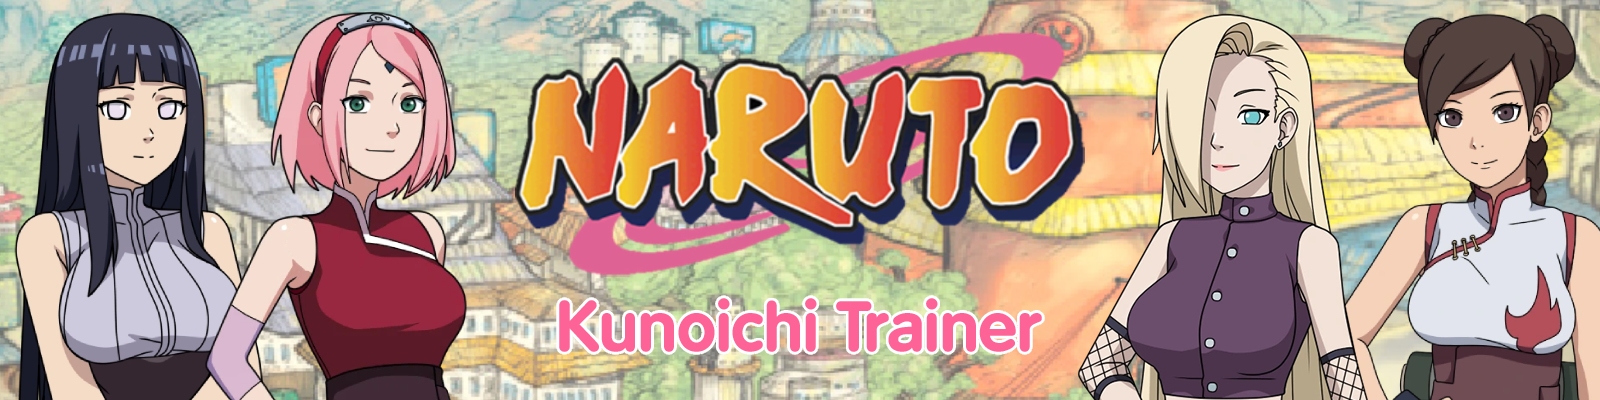 Naruto: Kunoichi Trainer [Free version]